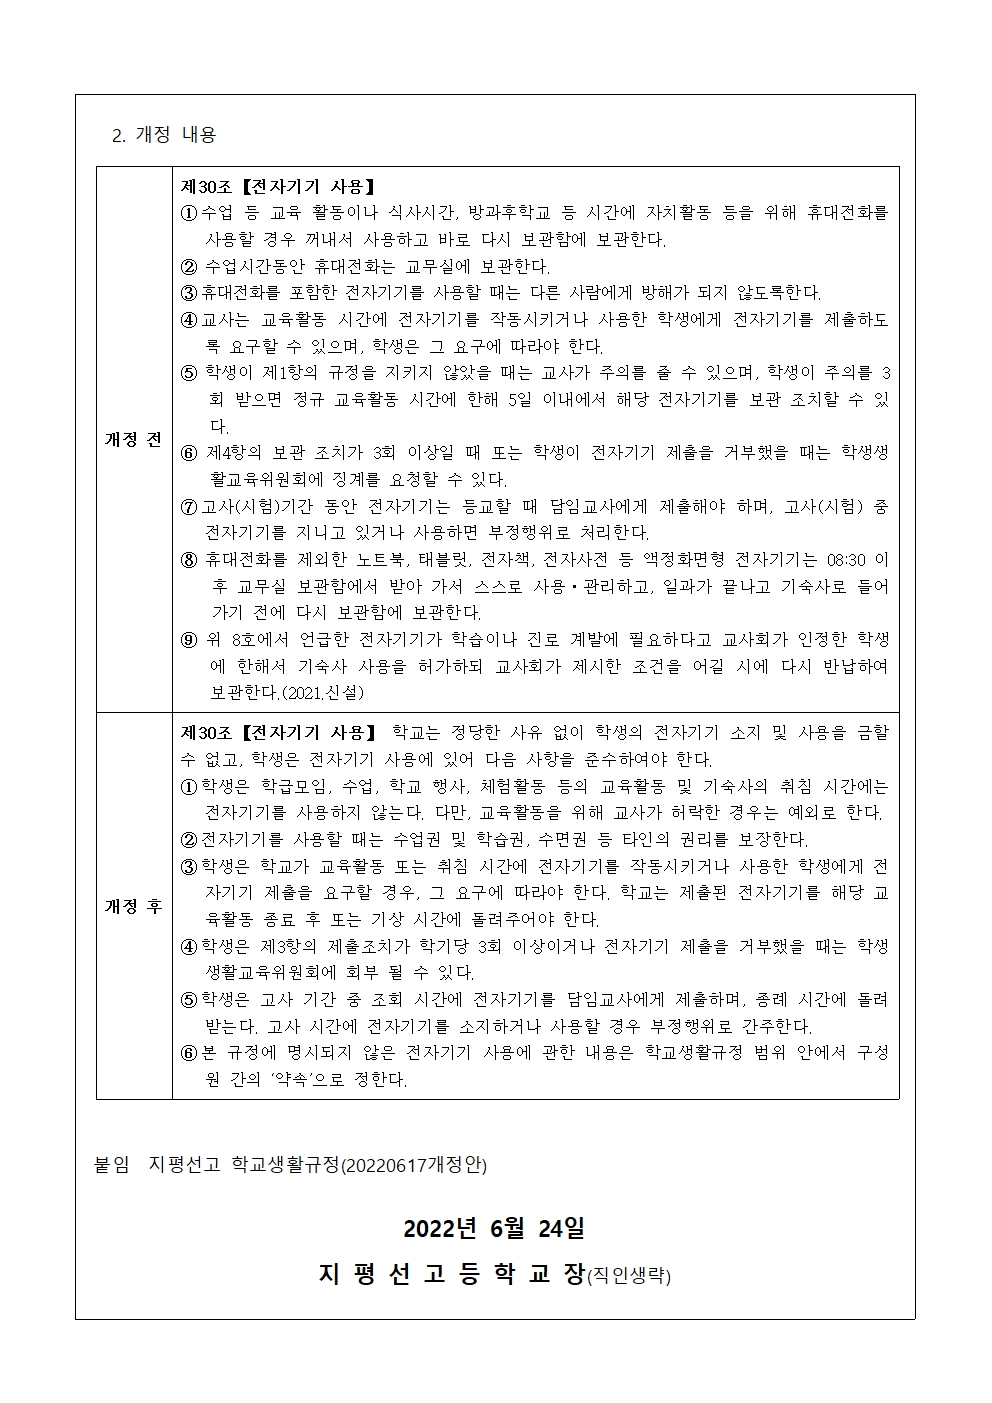 가정통신문 2022-41호 전자기기 관련 학교생활규정 개정 내용 안내002